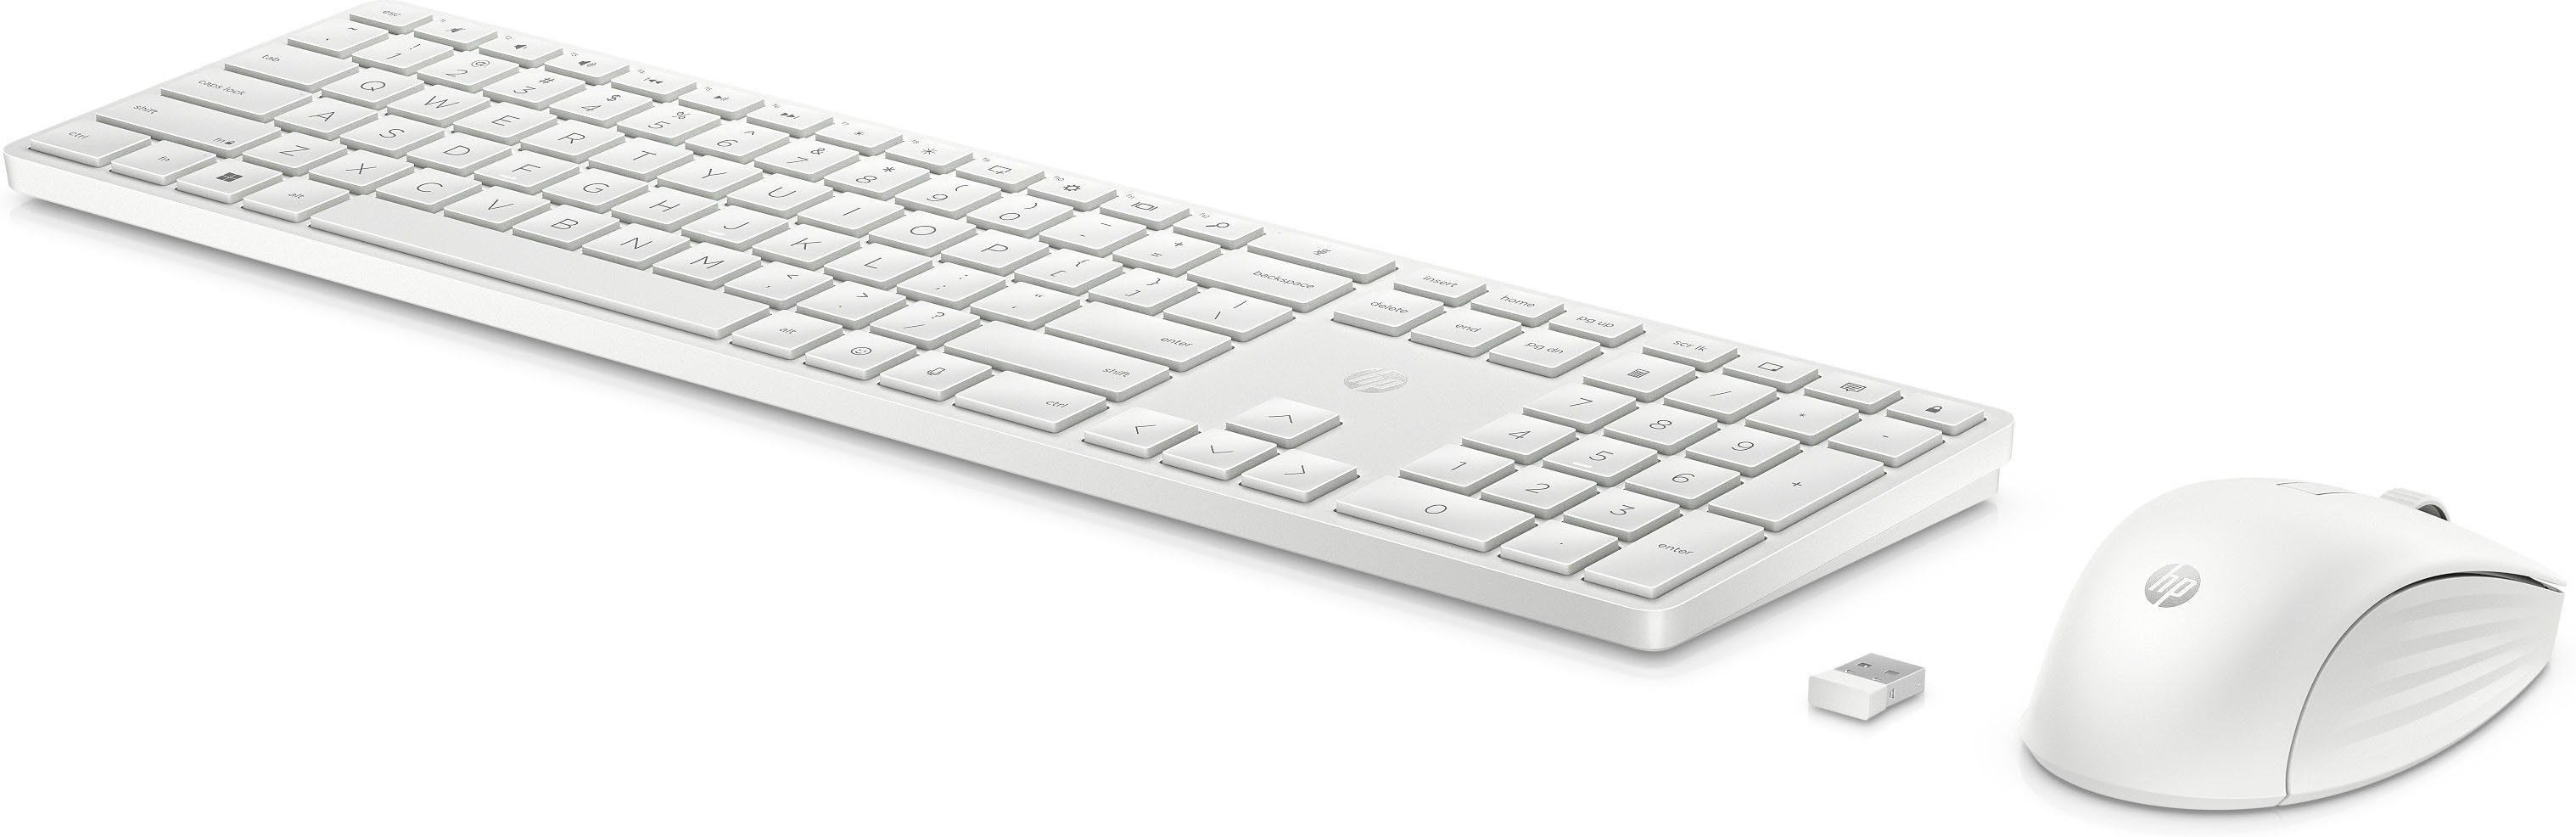 HP 650 Maus-Set und Programmierbare Tastatur- Wireless